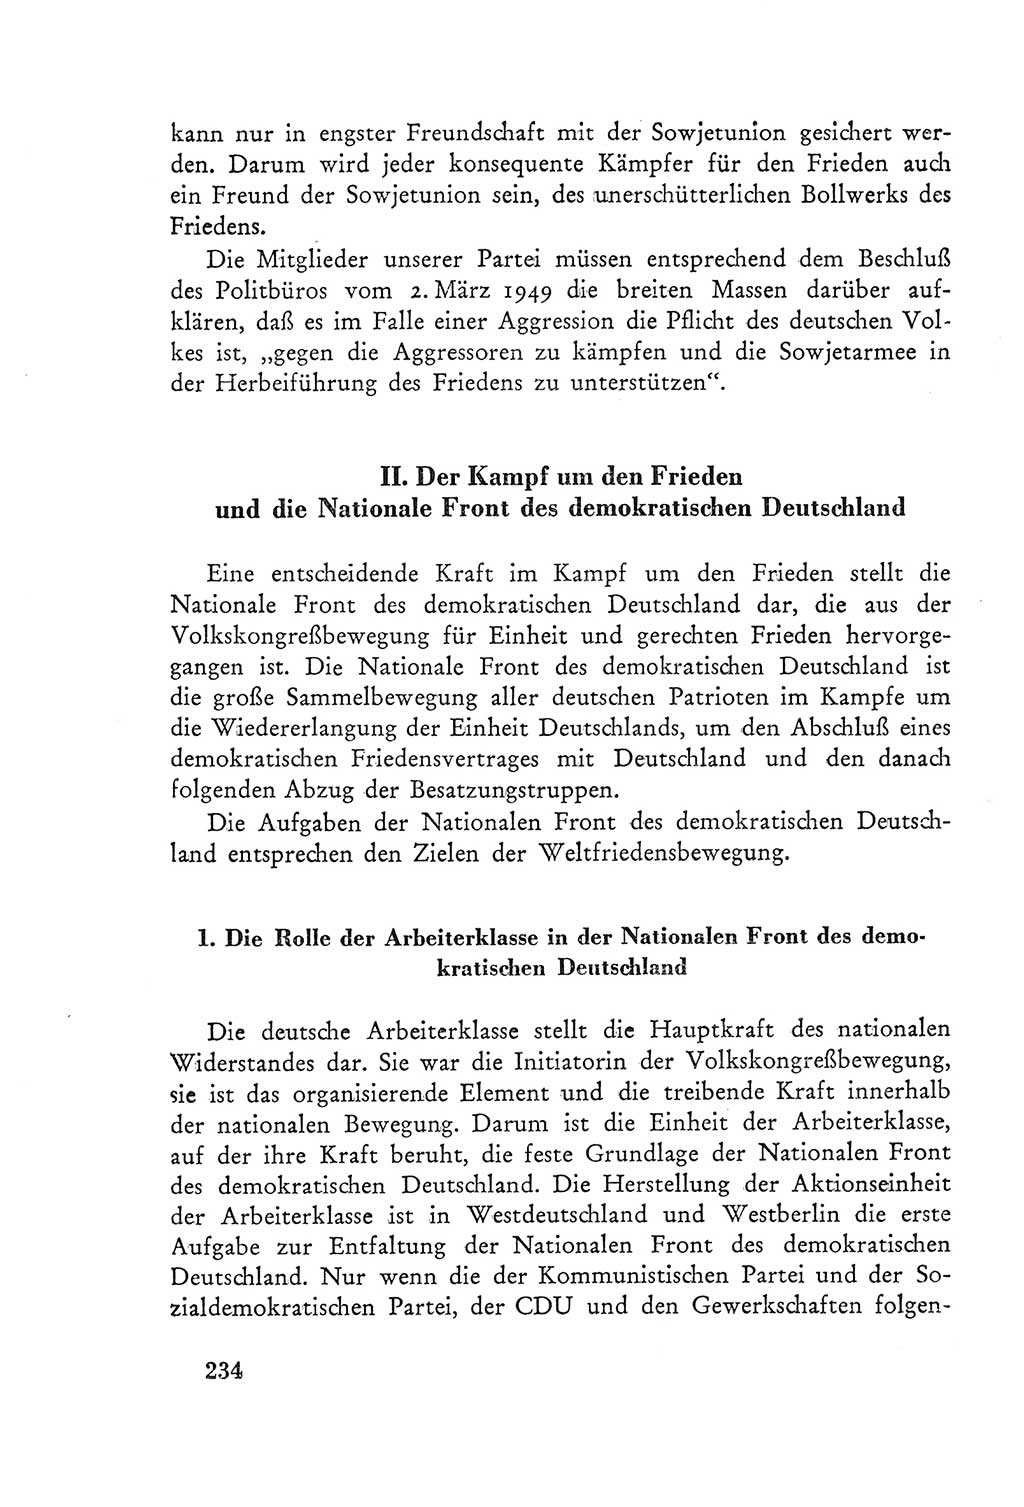 Protokoll der Verhandlungen des Ⅲ. Parteitages der Sozialistischen Einheitspartei Deutschlands (SED) [Deutsche Demokratische Republik (DDR)] 1950, Band 2, Seite 234 (Prot. Verh. Ⅲ. PT SED DDR 1950, Bd. 2, S. 234)